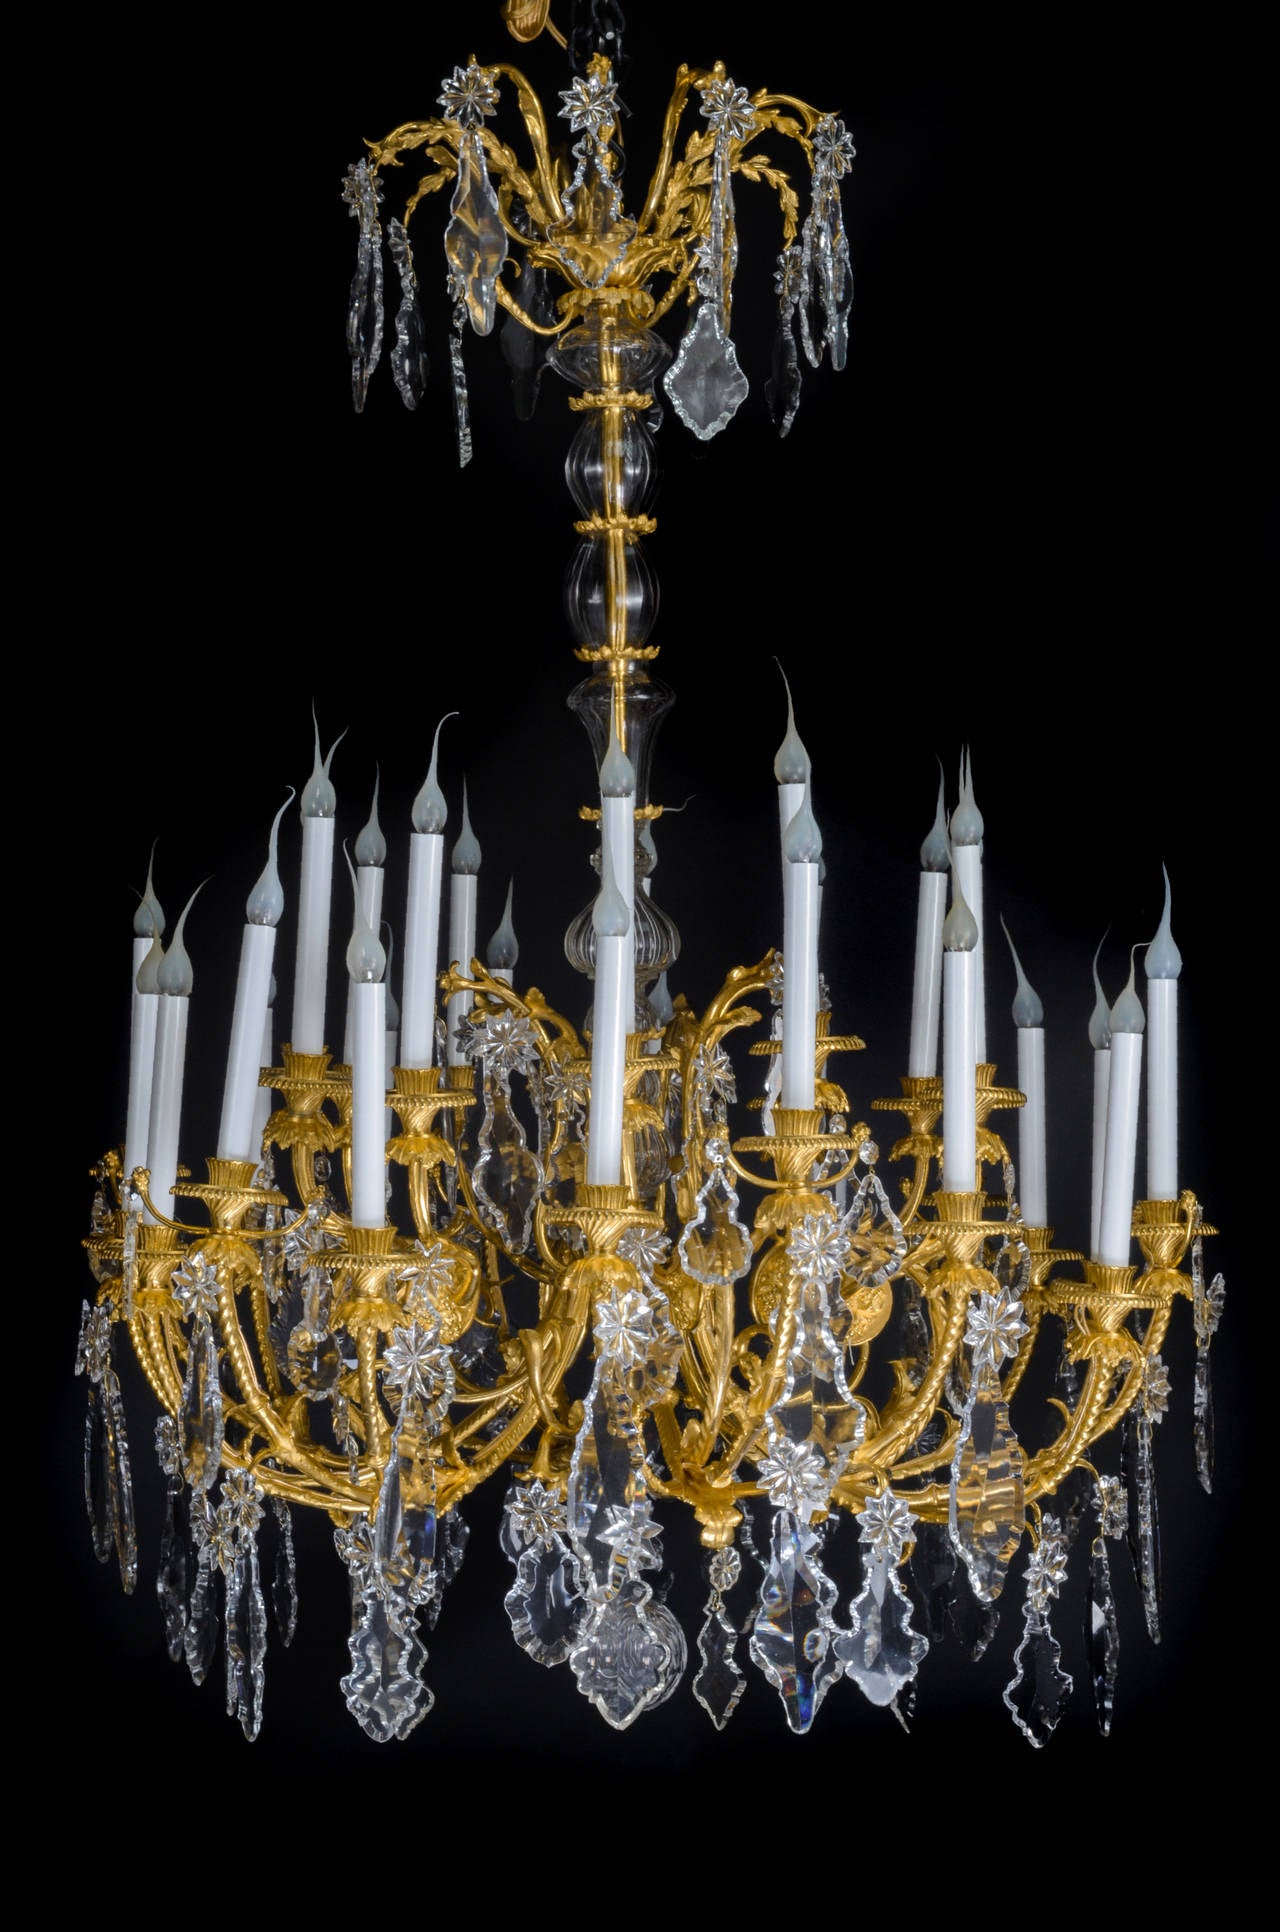 Un spectaculaire et grand lustre ancien français de style Louis XVI en bronze doré et cristal taillé de Baccarat, à trois niveaux et à plusieurs lumières, d'une superbe facture, agrémenté d'un axe central en cristal taillé, de grands prismes en